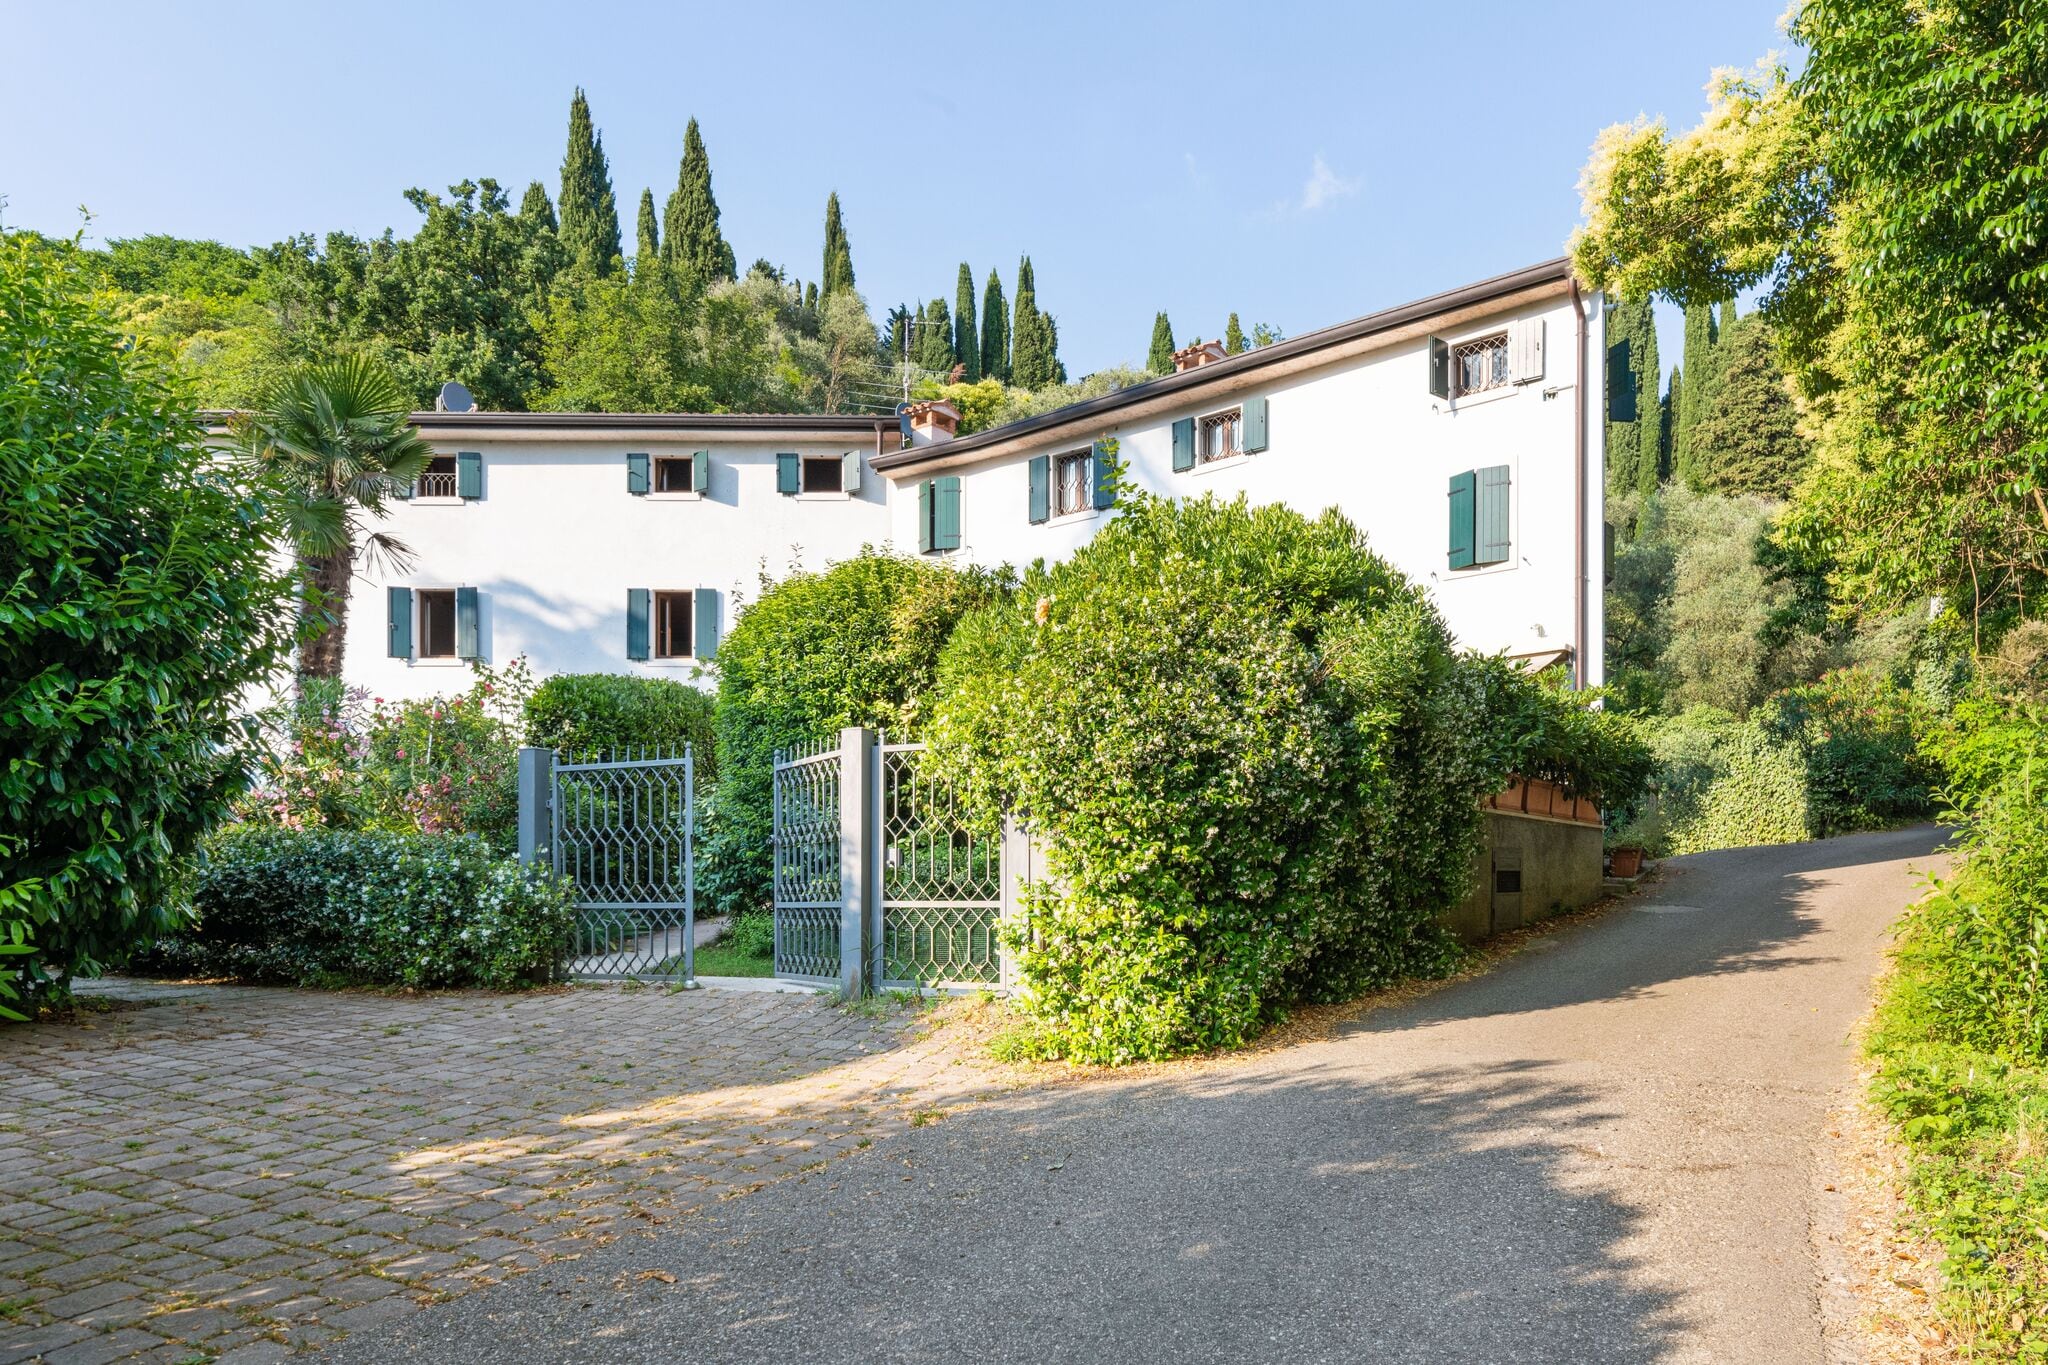 Leuke residence bij het Gardameer, aan de kant van Verona.